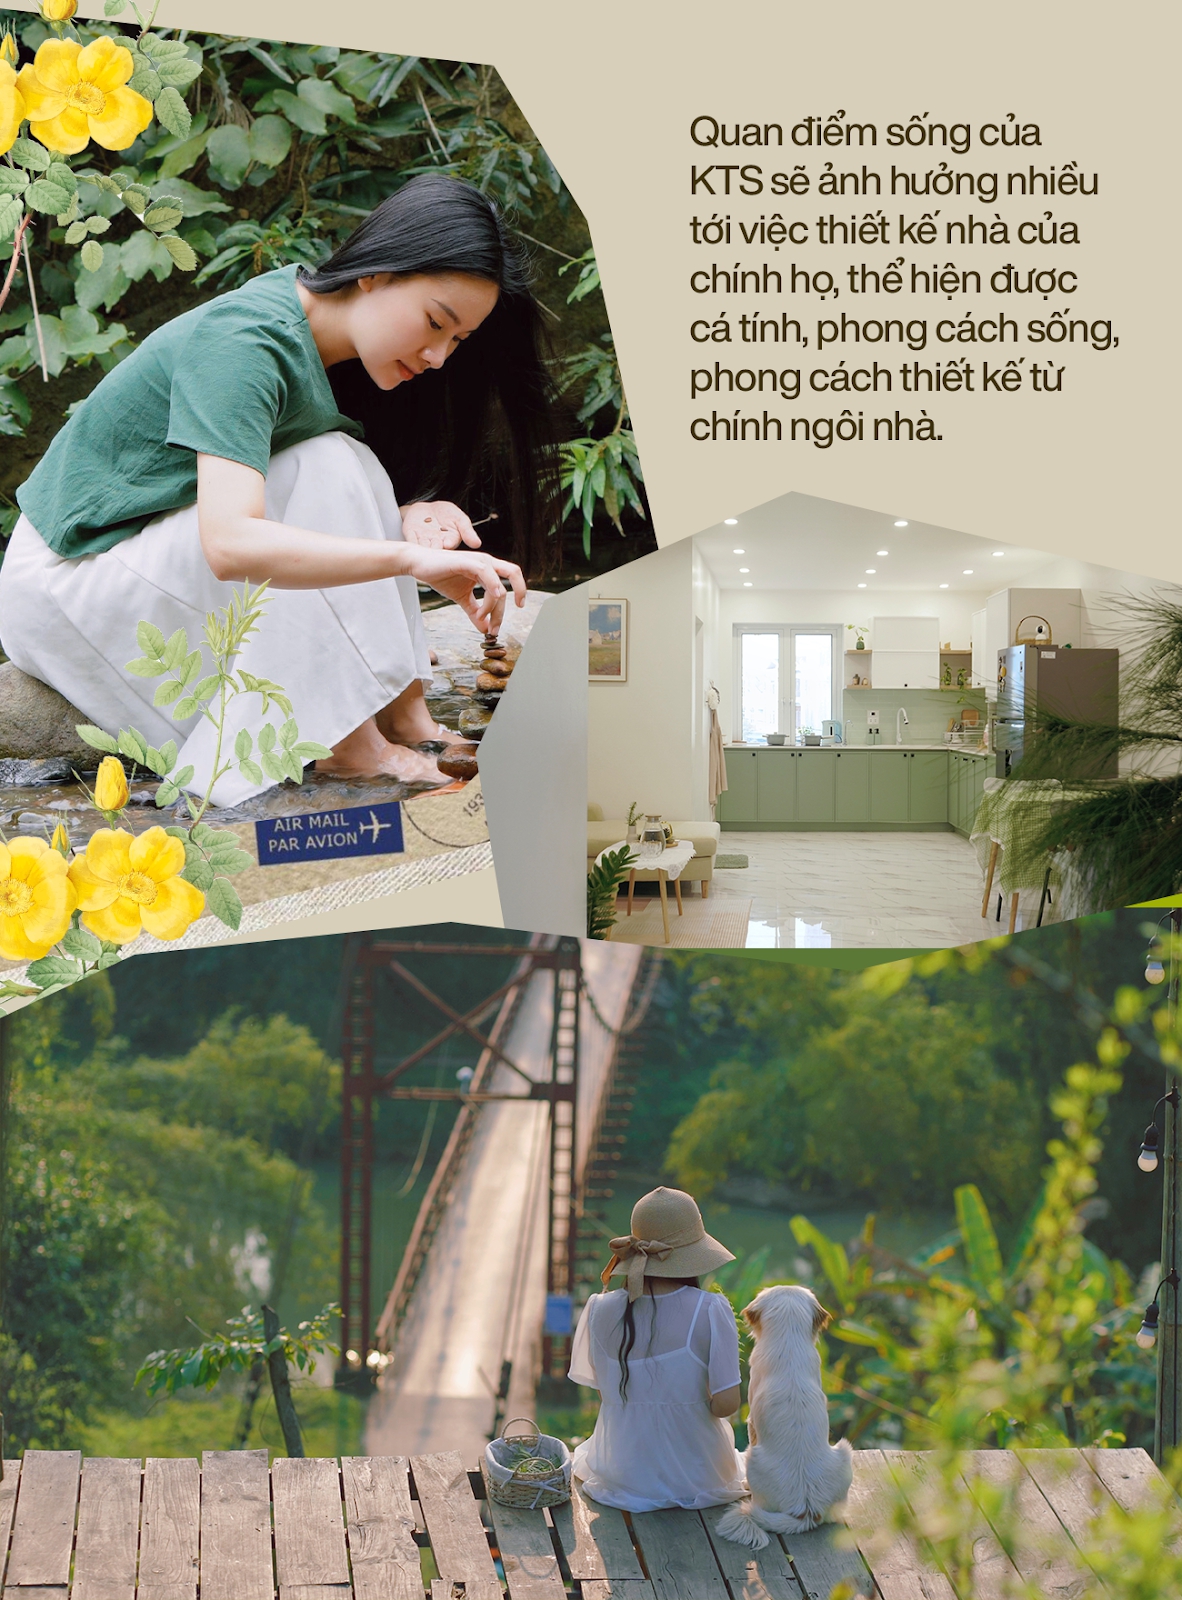 Nữ KTS bỏ phố về rừng, tự tay thiết kế nhà giữa núi rừng Việt Bắc: Không gian chữa lành, đánh thức giác quan - Ảnh 2.